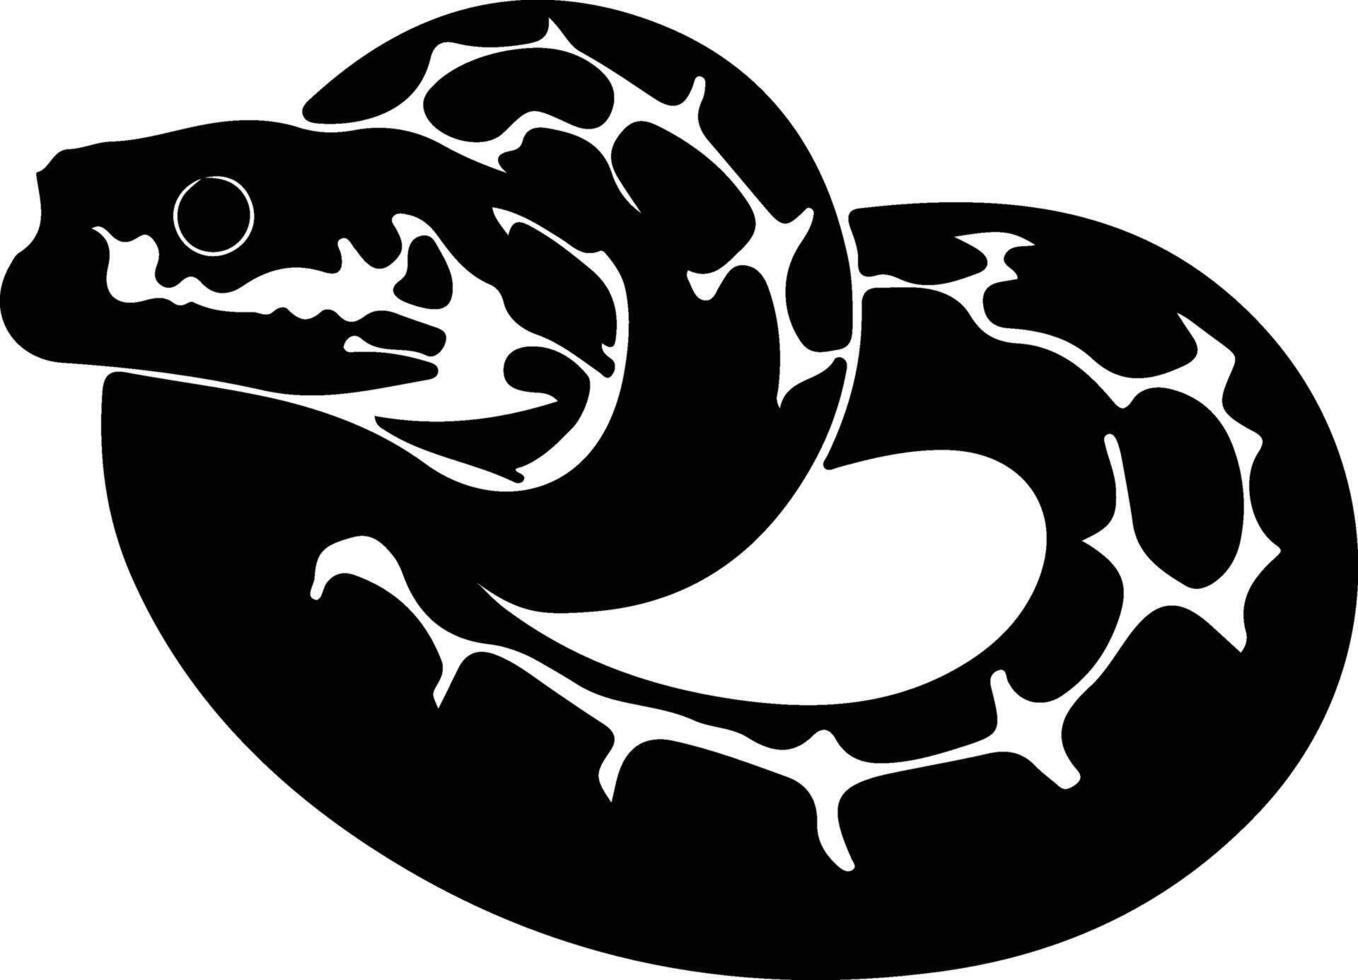 Toro serpente nero silhouette vettore